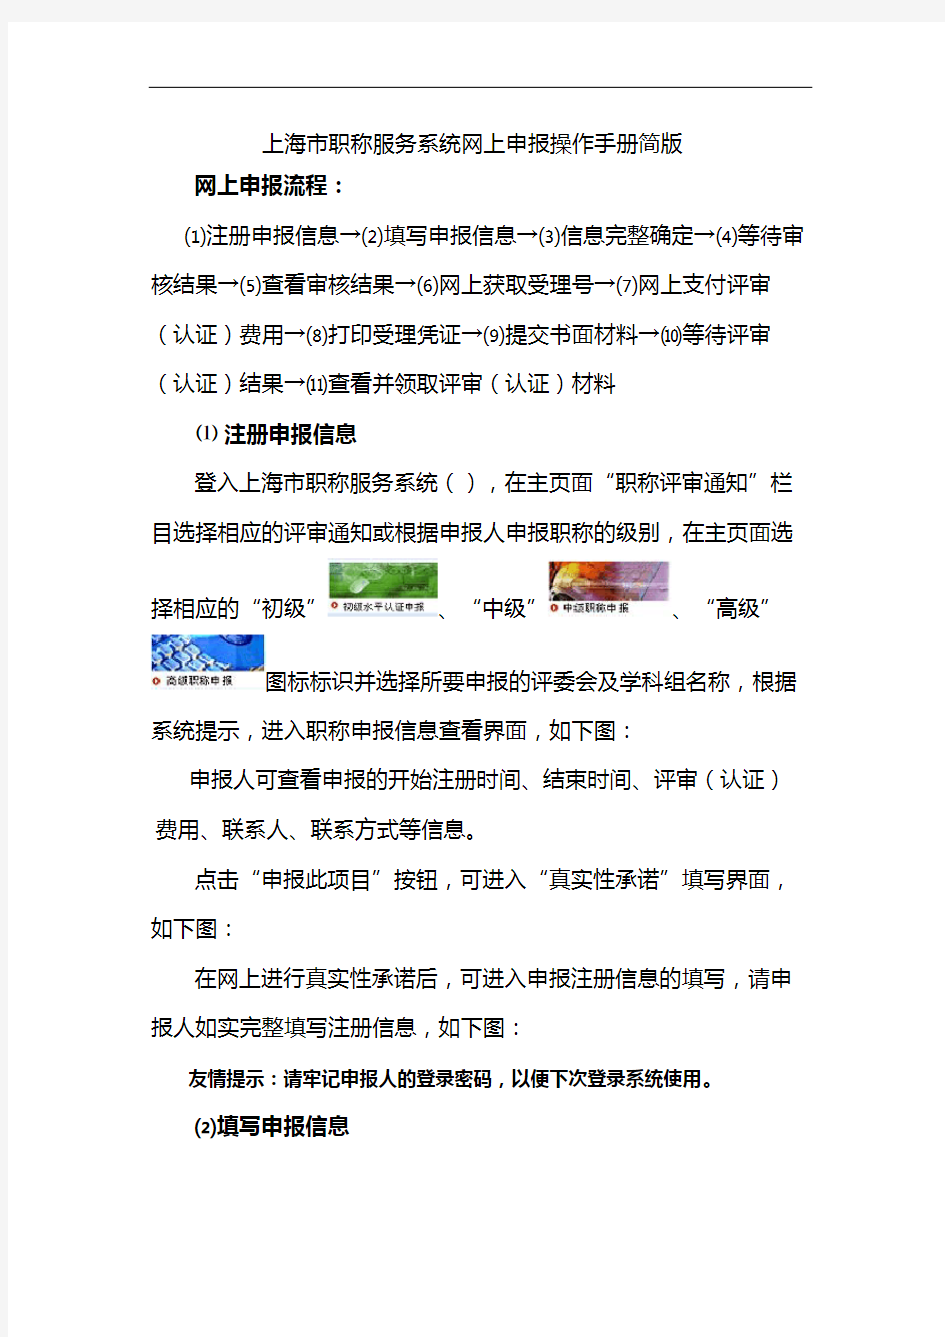 上海职称申报系统说明书